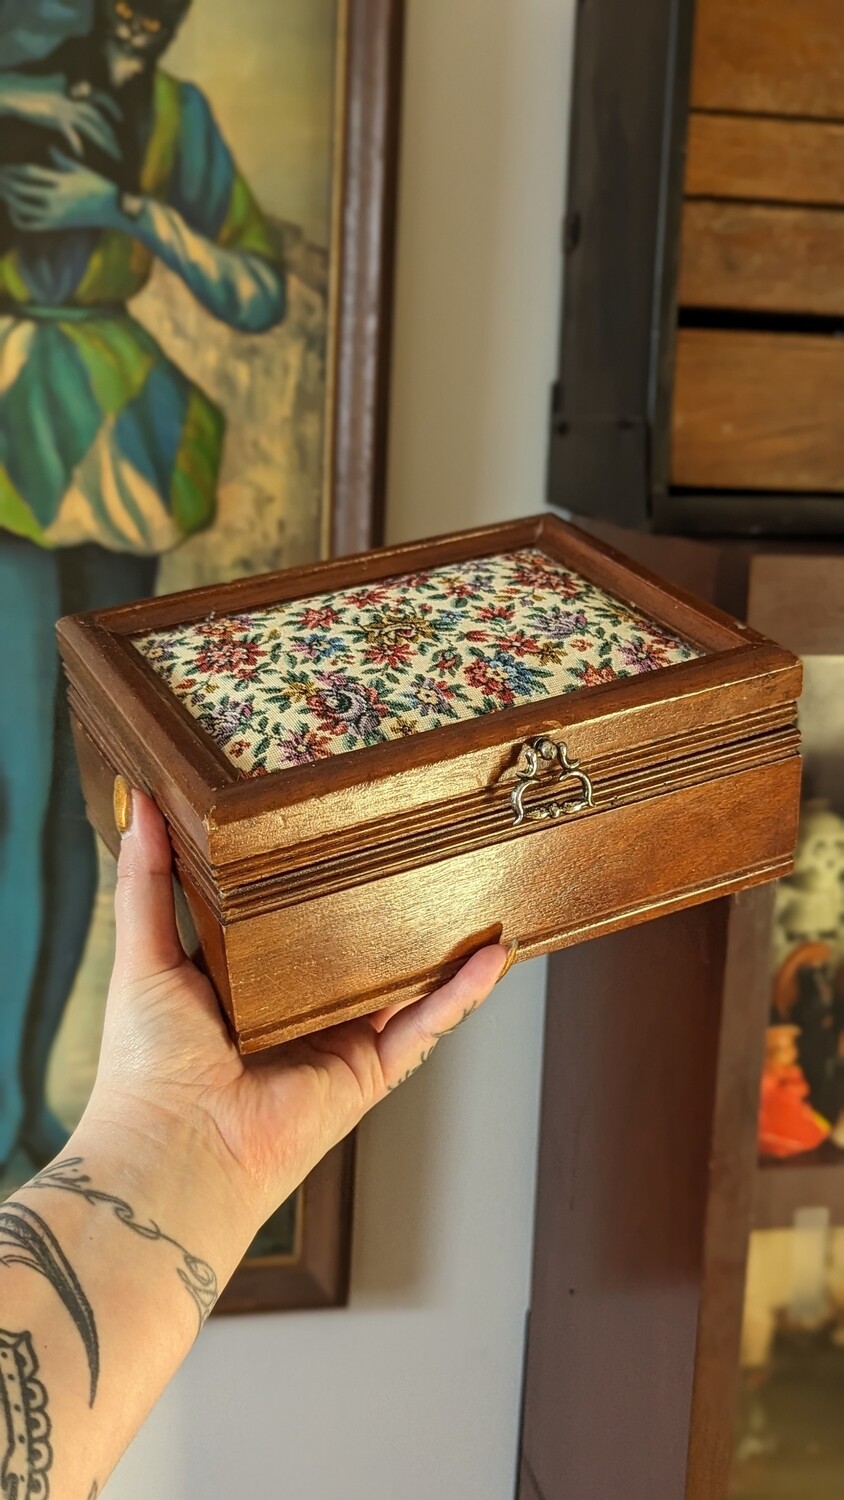 Wood jewelry box with cross stitch